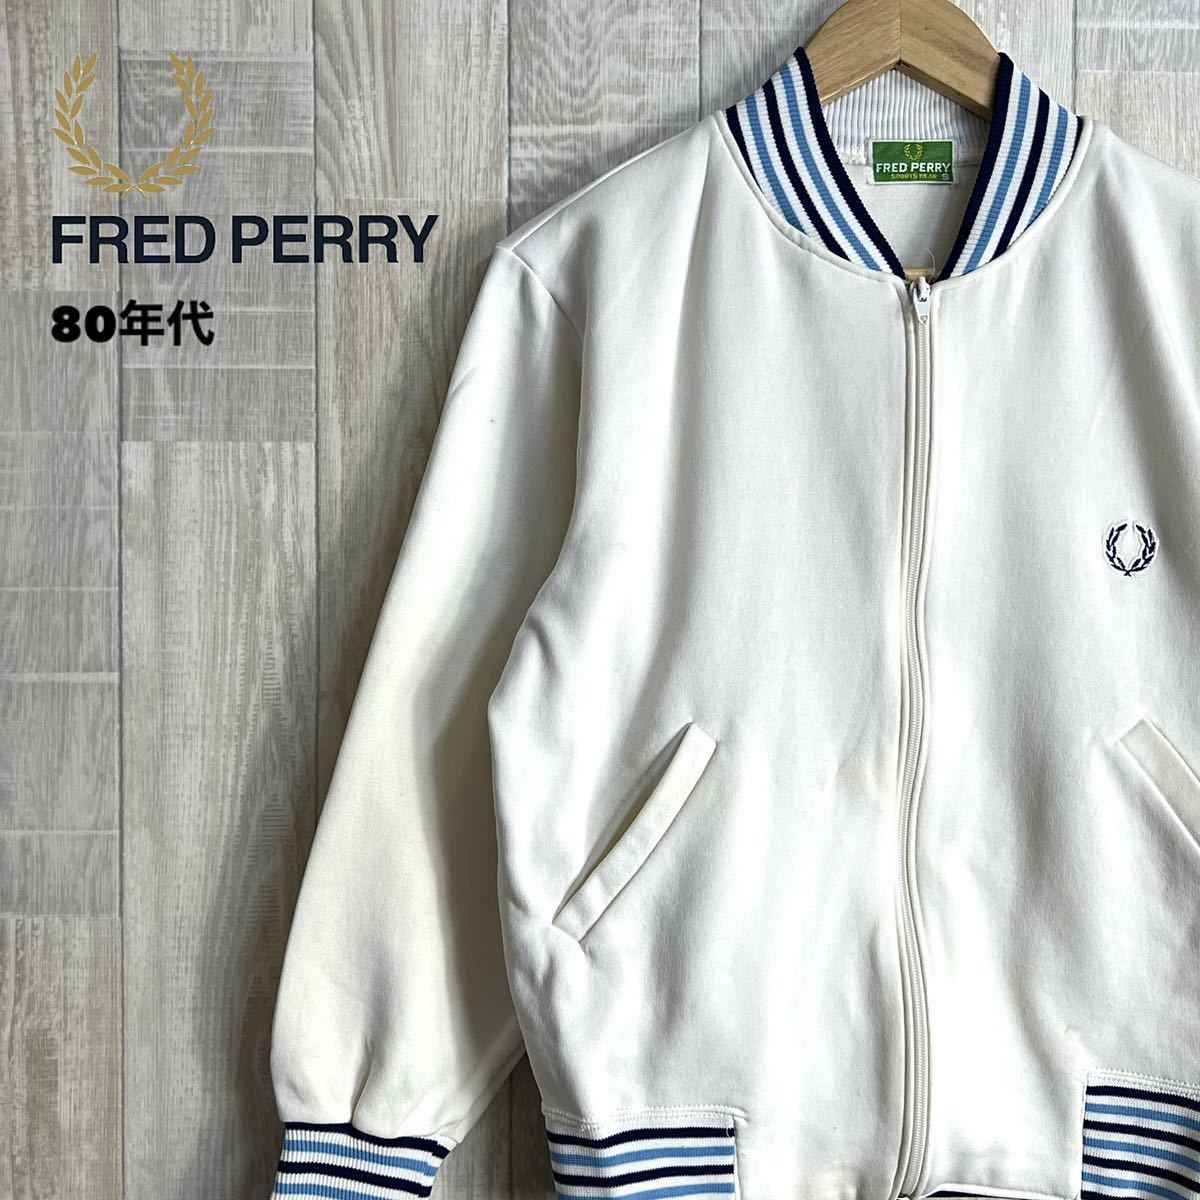 FRED PERRY 80年代 トラックジャケット サイズS ホワイト ブルー ジャージ 古着 フレッドペリー レトロジャージ メンズ トップス